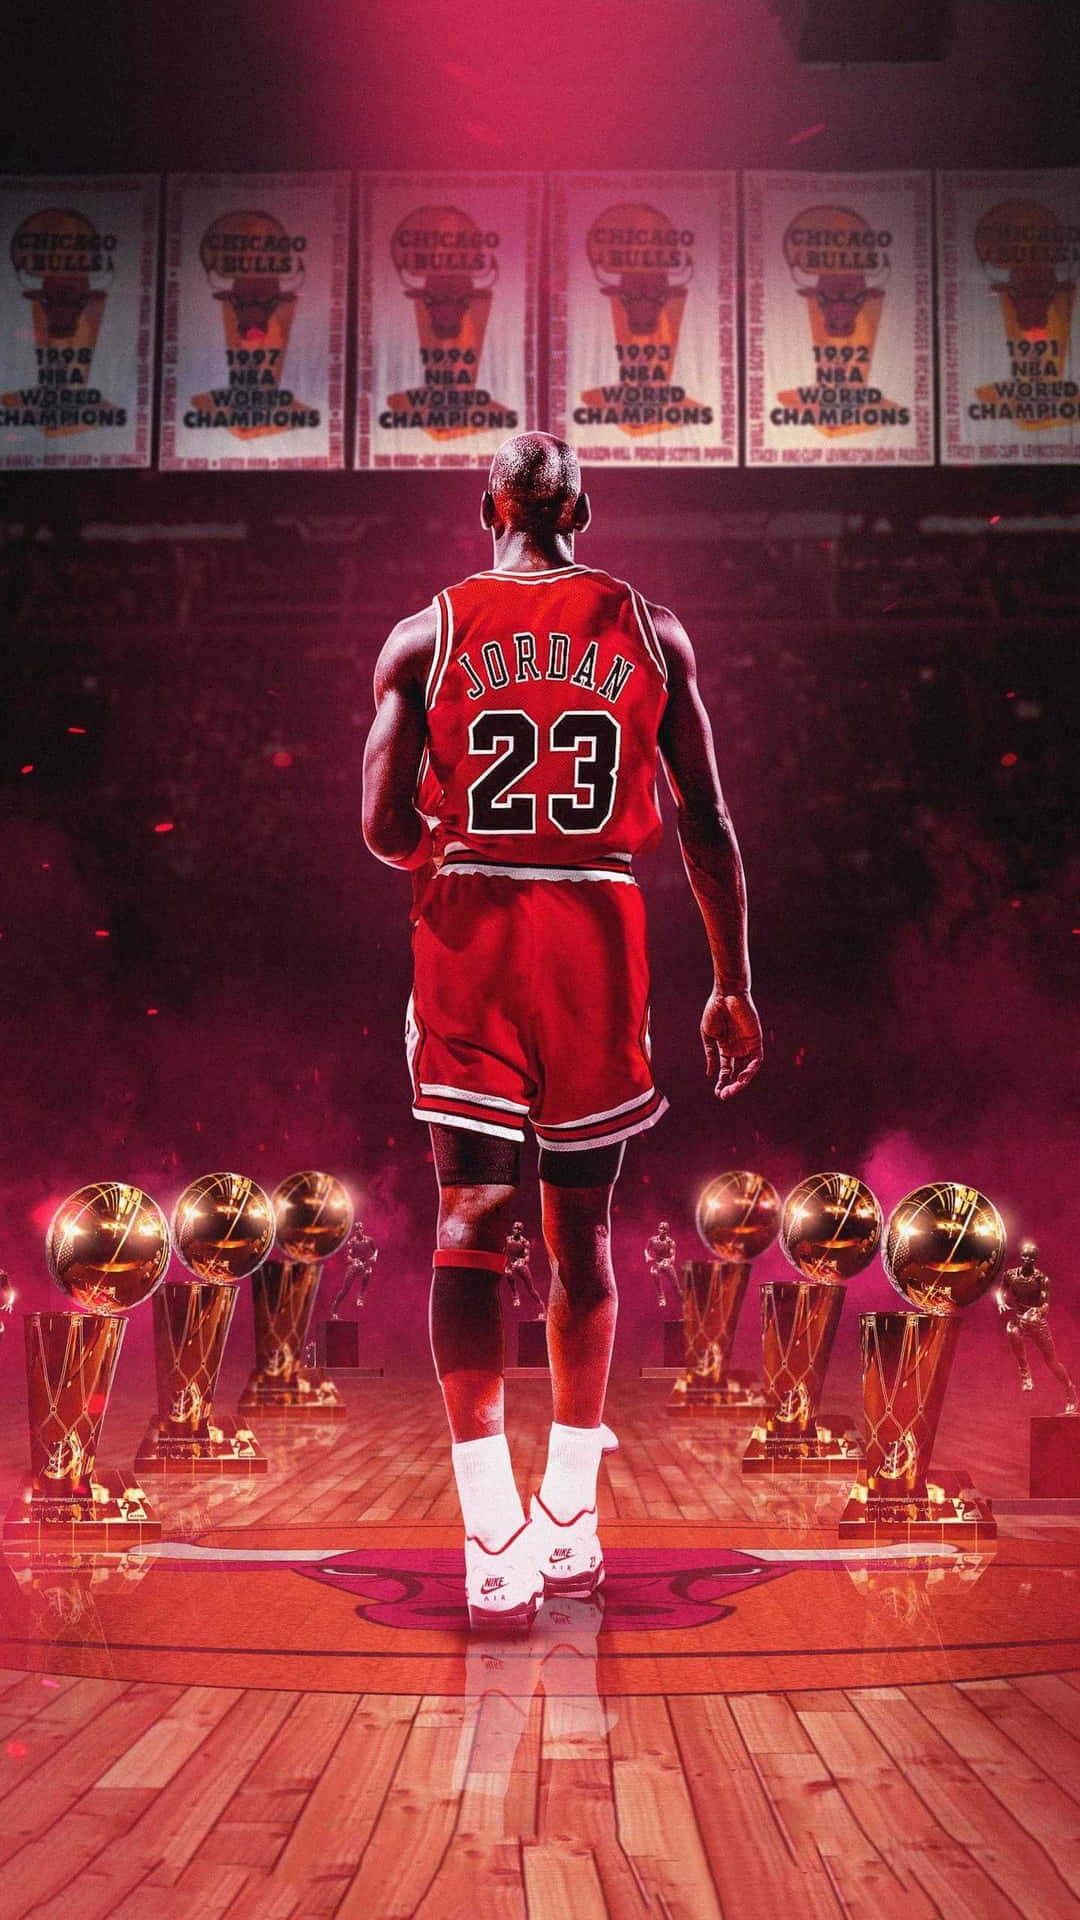 Feiernsie Das Vermächtnis Der Basketballlegende Michael Jordan Mit Dem Neuen Iphone. Wallpaper